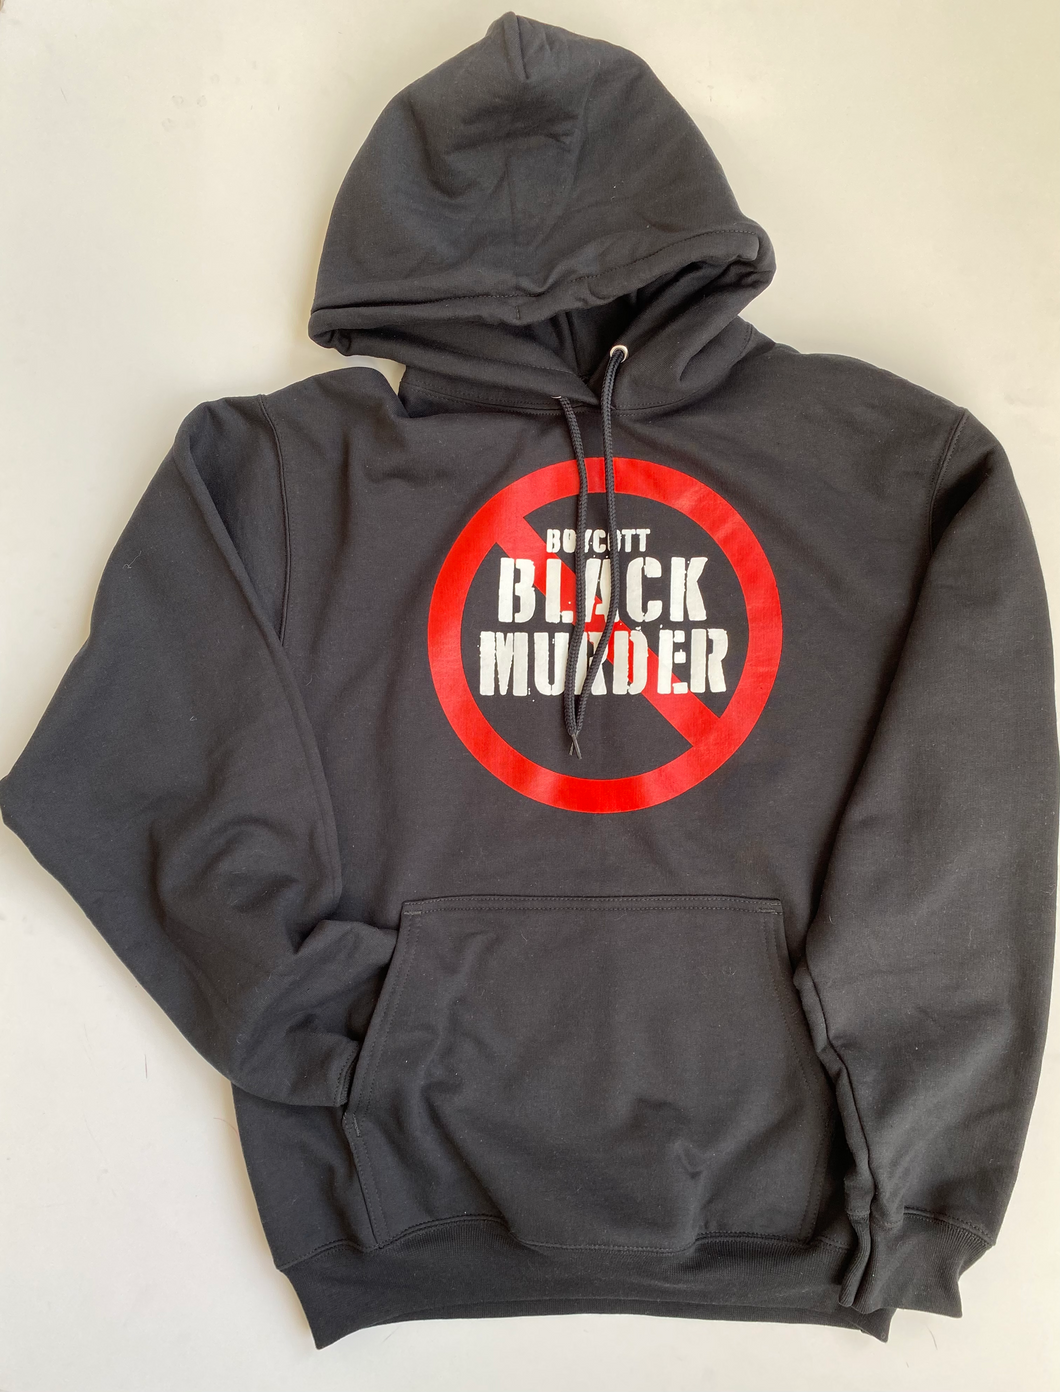 Boycott Black Murder Hoodie Sweatshirt